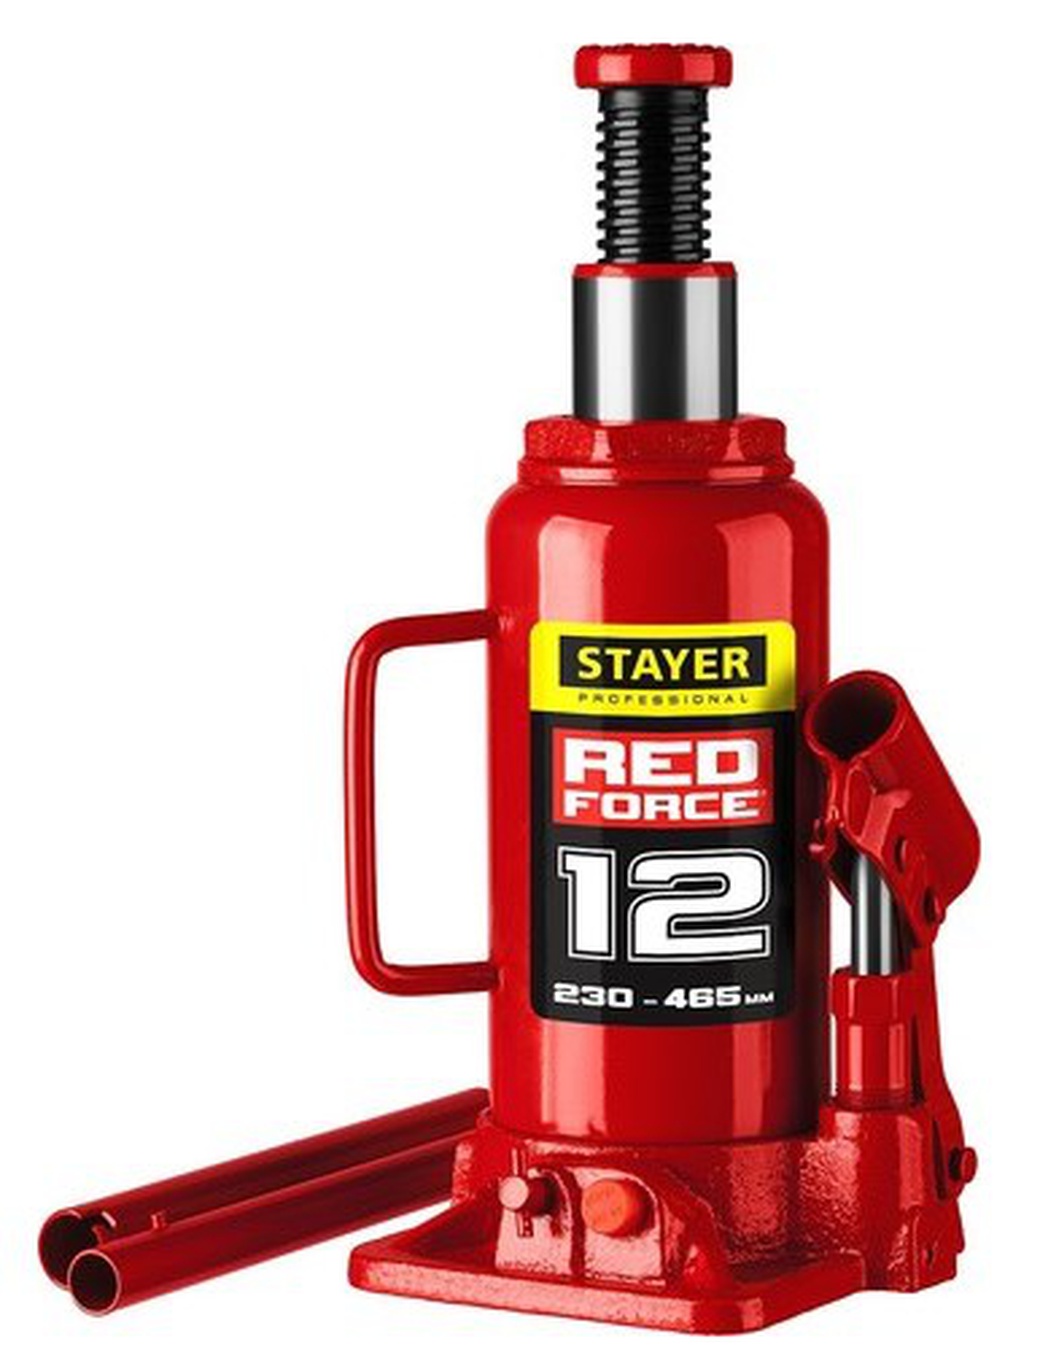 Домкрат гидравлический бутылочный STAYER 43160-12 "RED FORCE", 12т, 230-465 мм фото